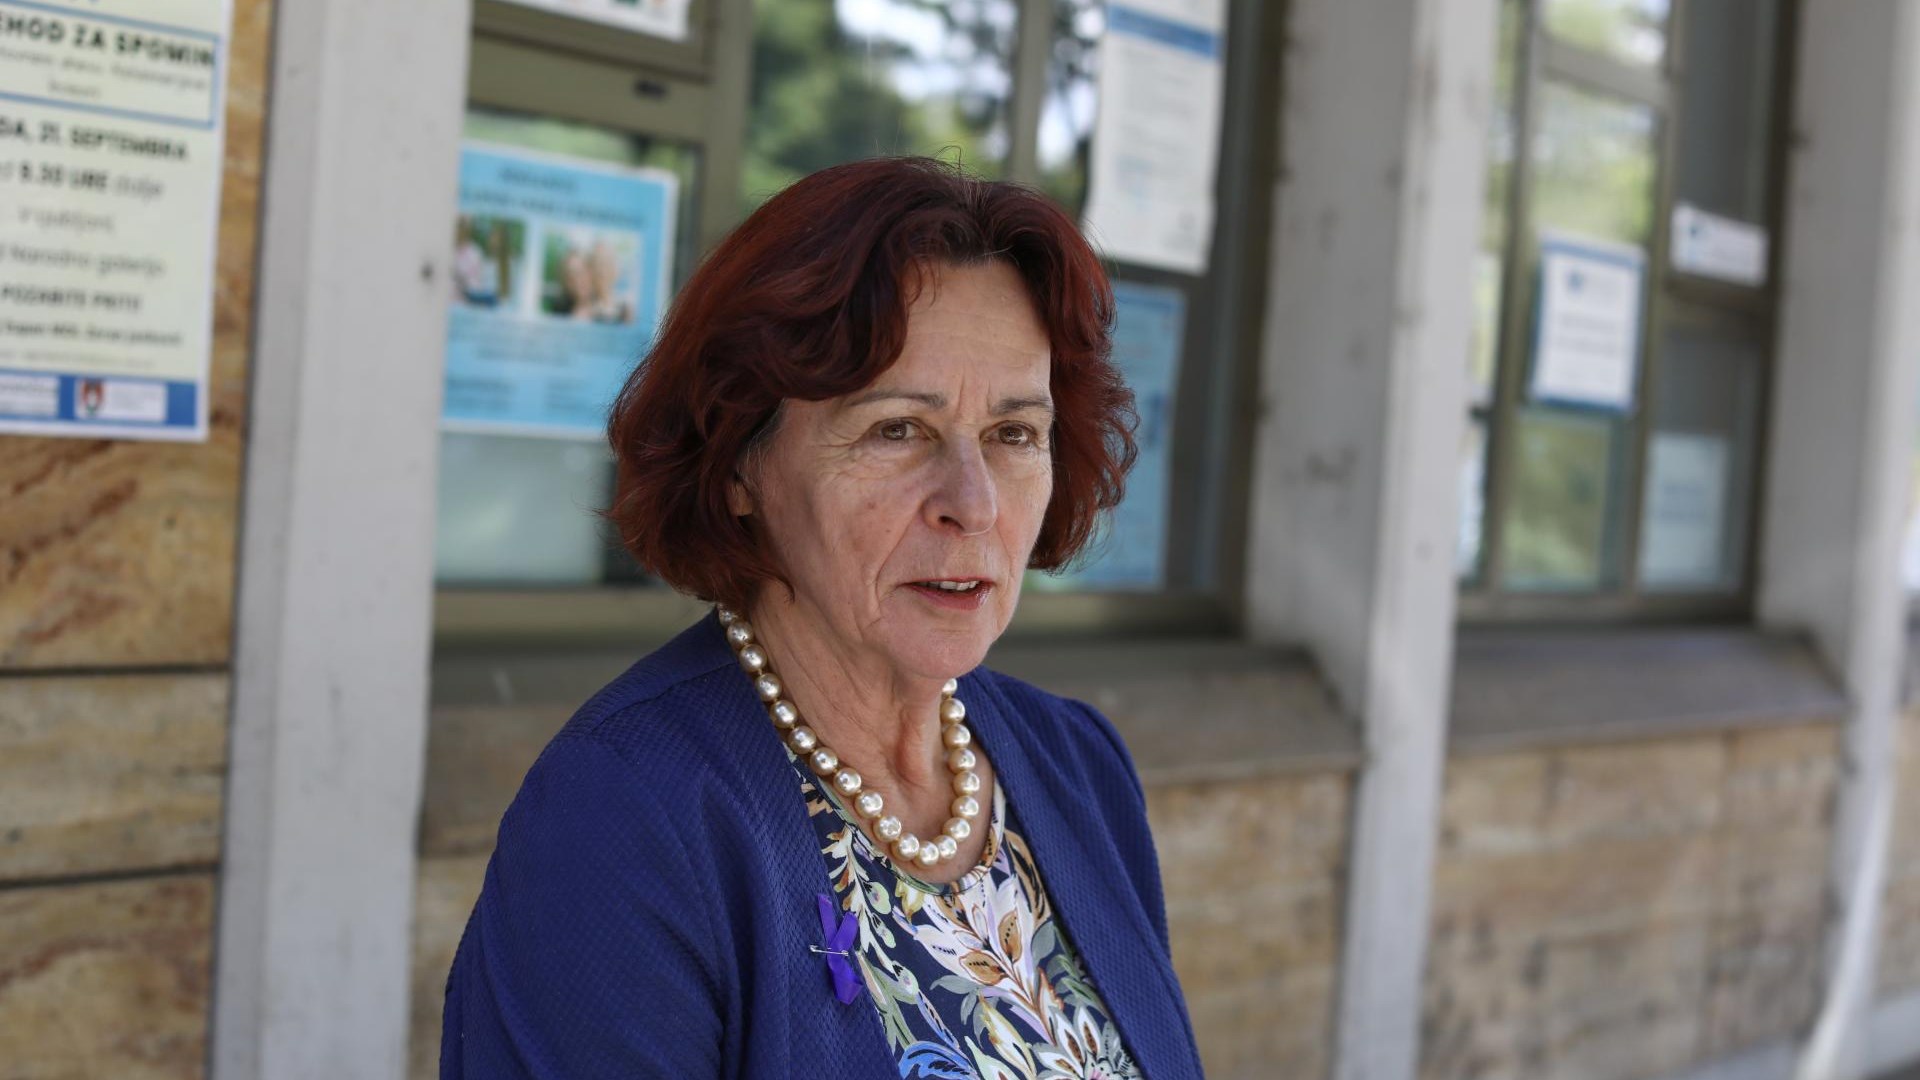 #intervju Štefanija Lukič Zlobec, predsednica Združenja Spominčica: Demenca je veliko več kot zgolj izguba spomina